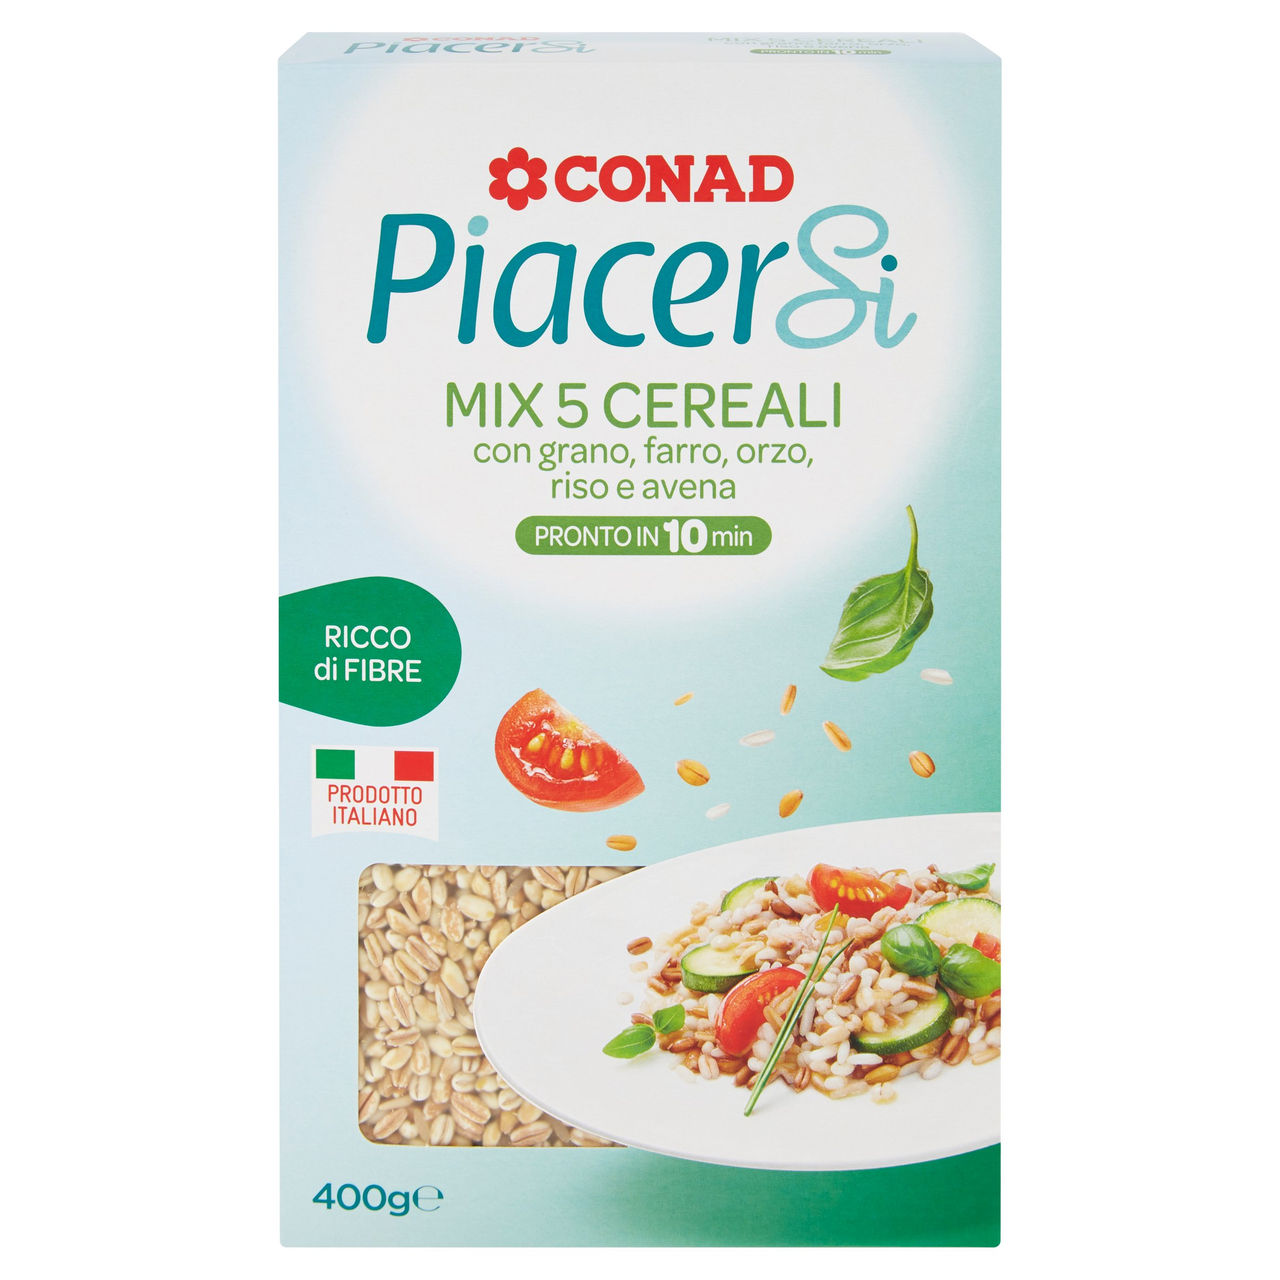 Mix 5 Cereali Precotti 400 g Piacersi Conad